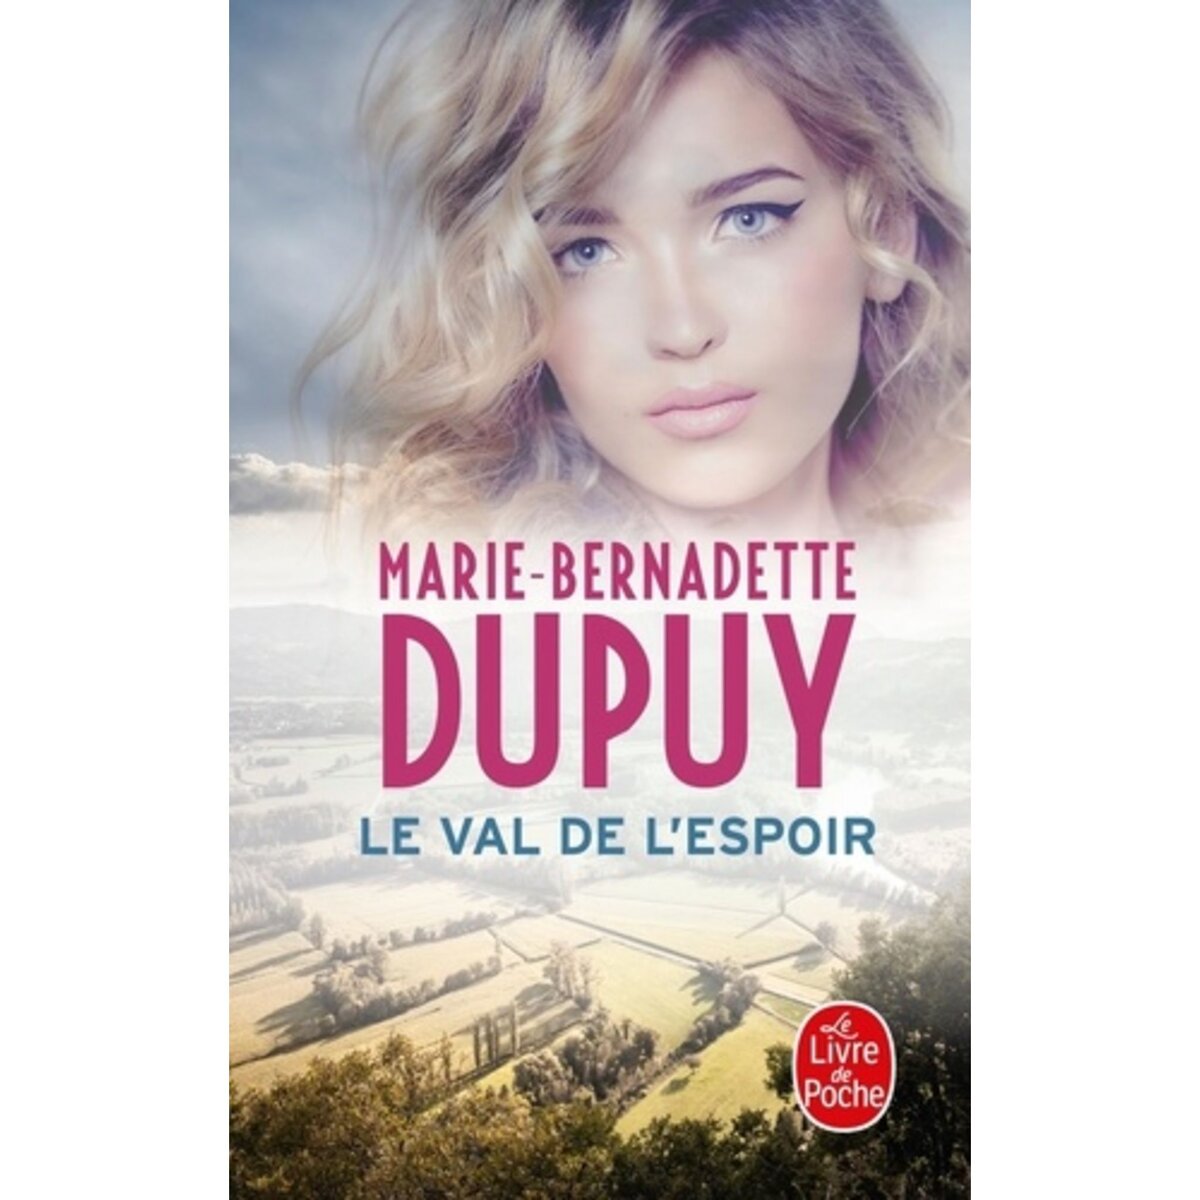  LE VAL DE L'ESPOIR, Dupuy Marie-Bernadette